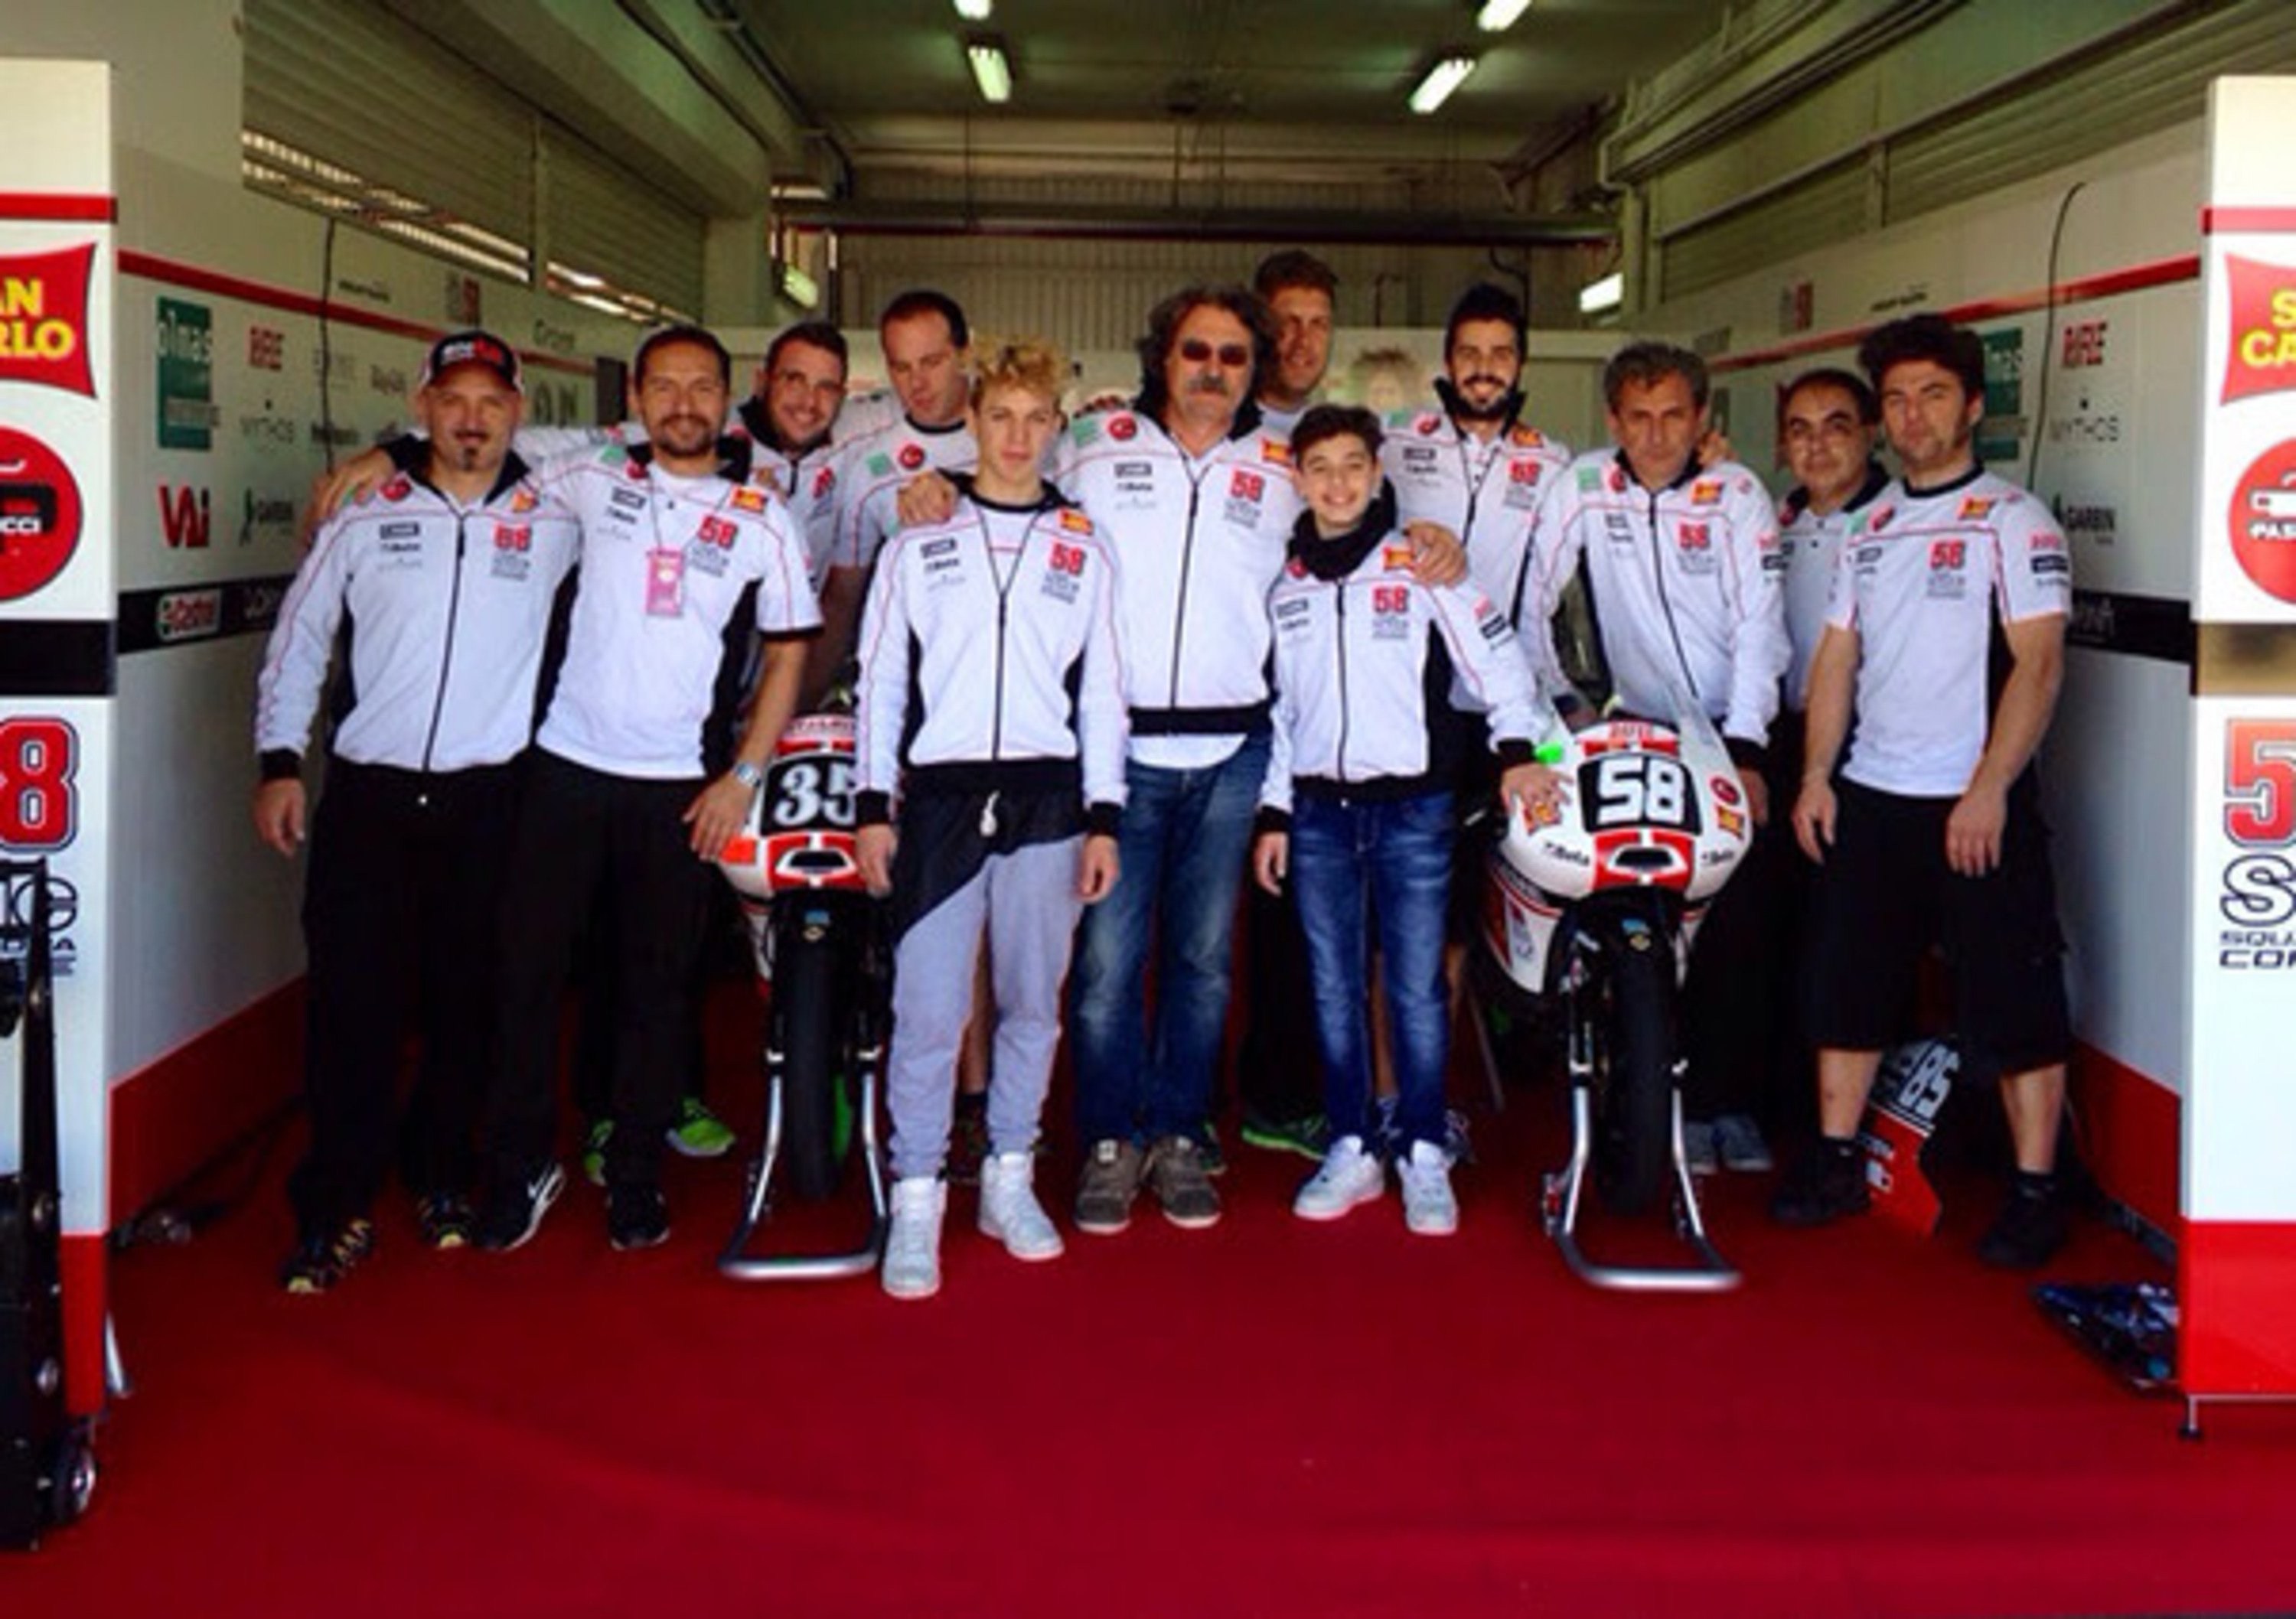 La Squadra Corse SIC 58 San Carlo ha debuttato in Moto3 al CEV